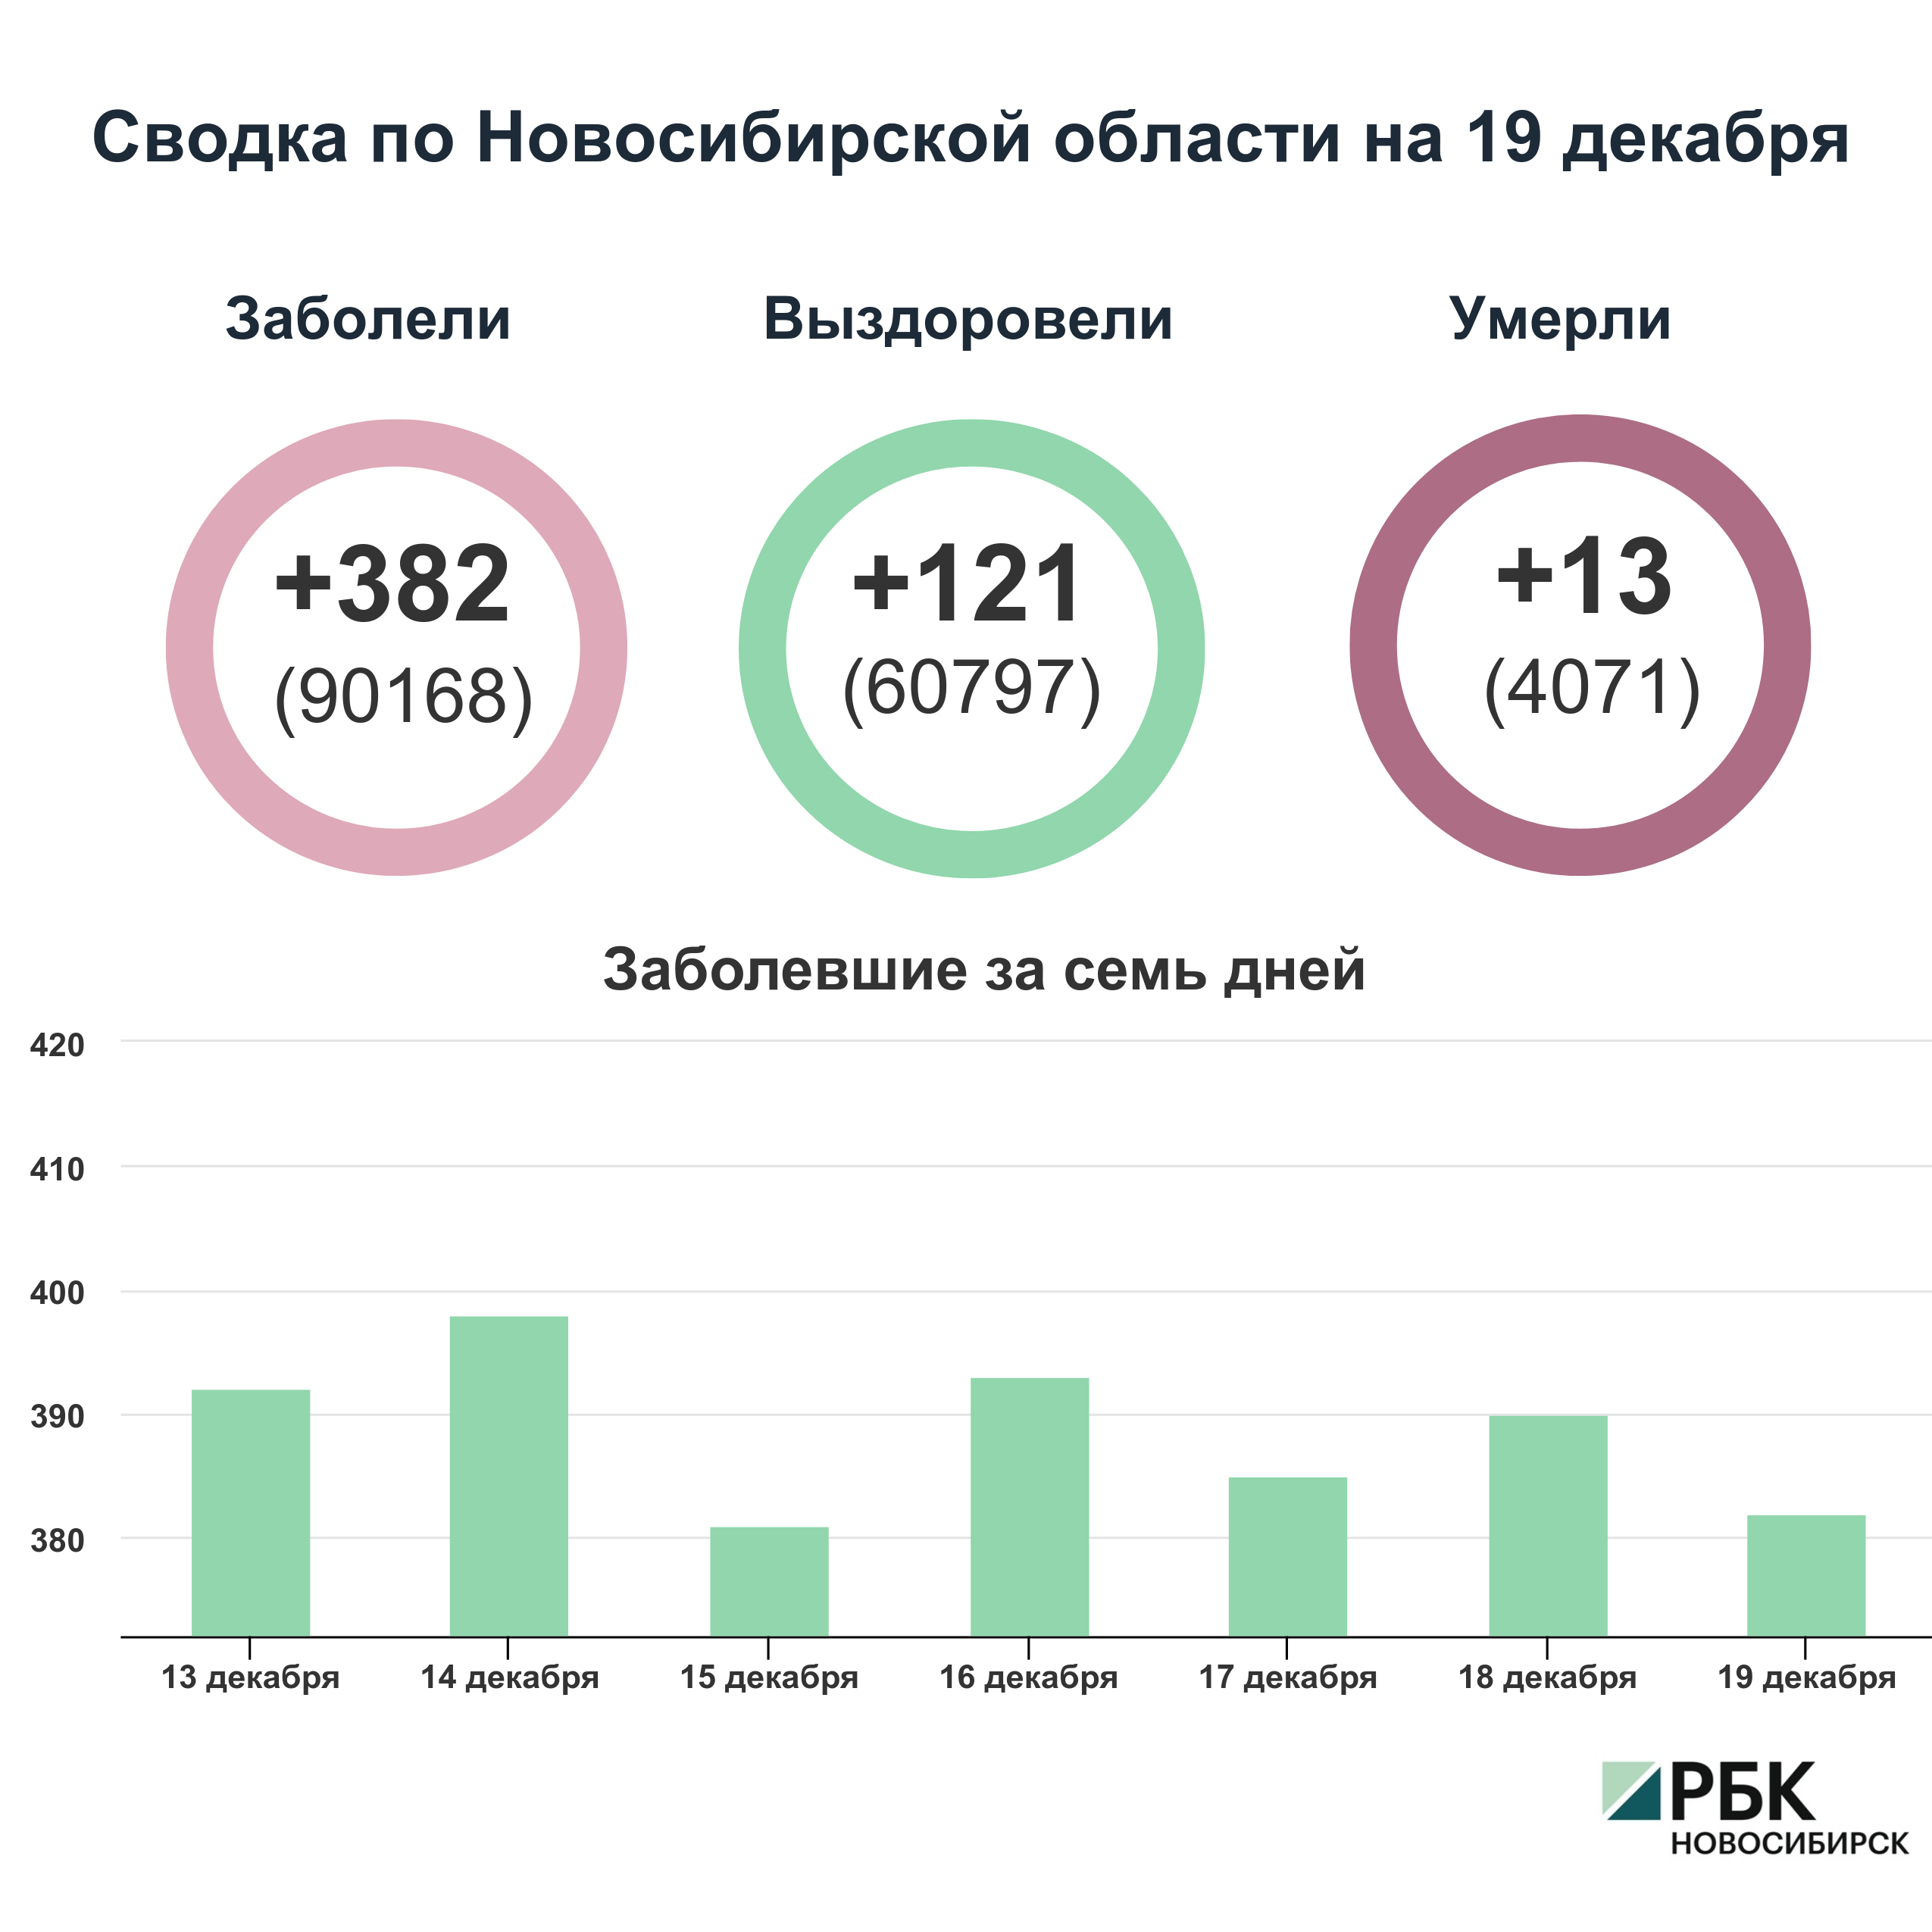 Коронавирус в Новосибирске: сводка на 19 декабря